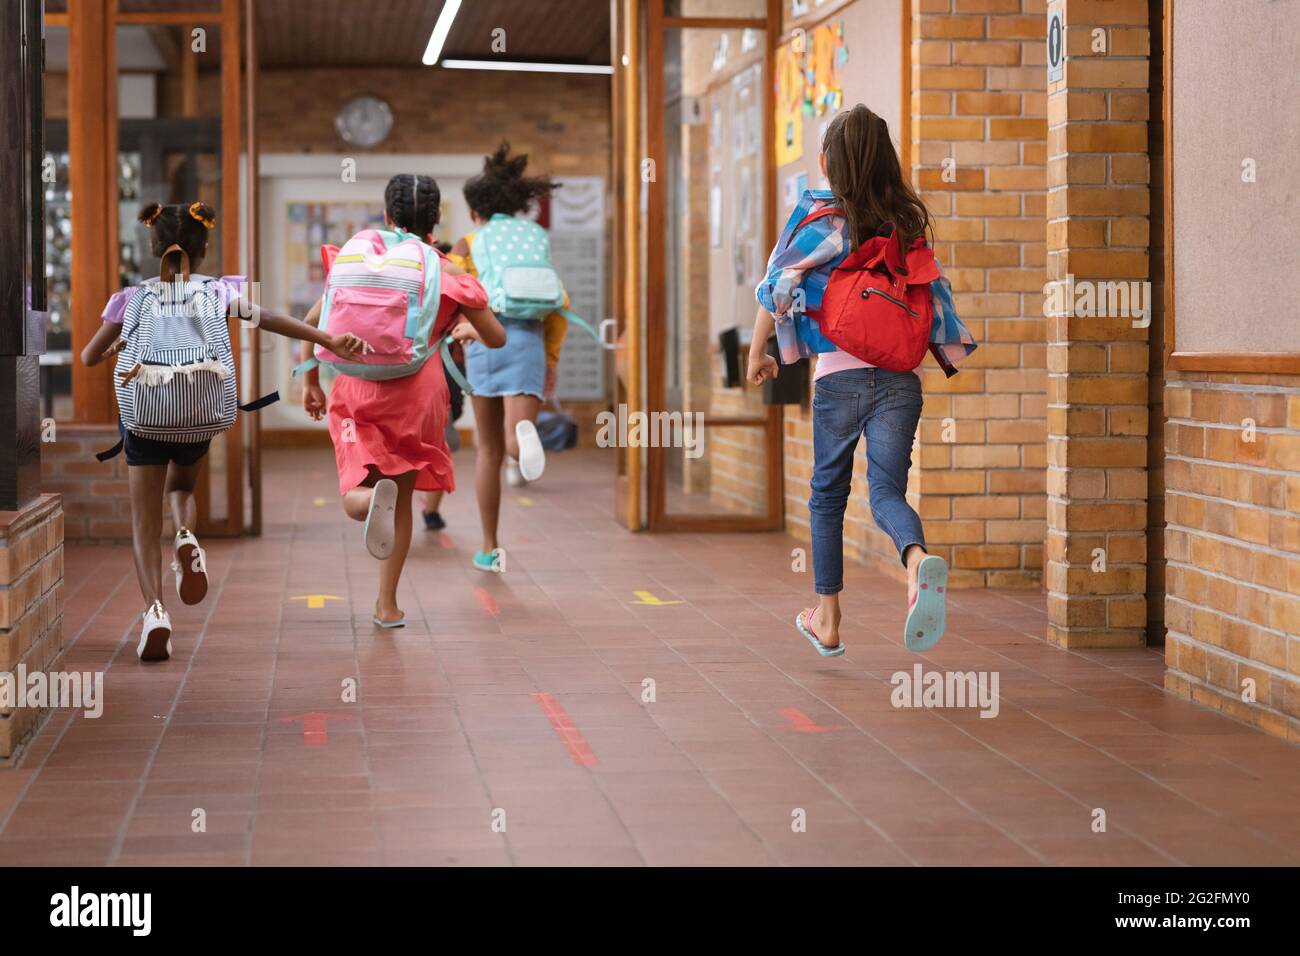 Vista trasera del grupo de niñas corriendo en el pasillo de la escuela Foto de stock